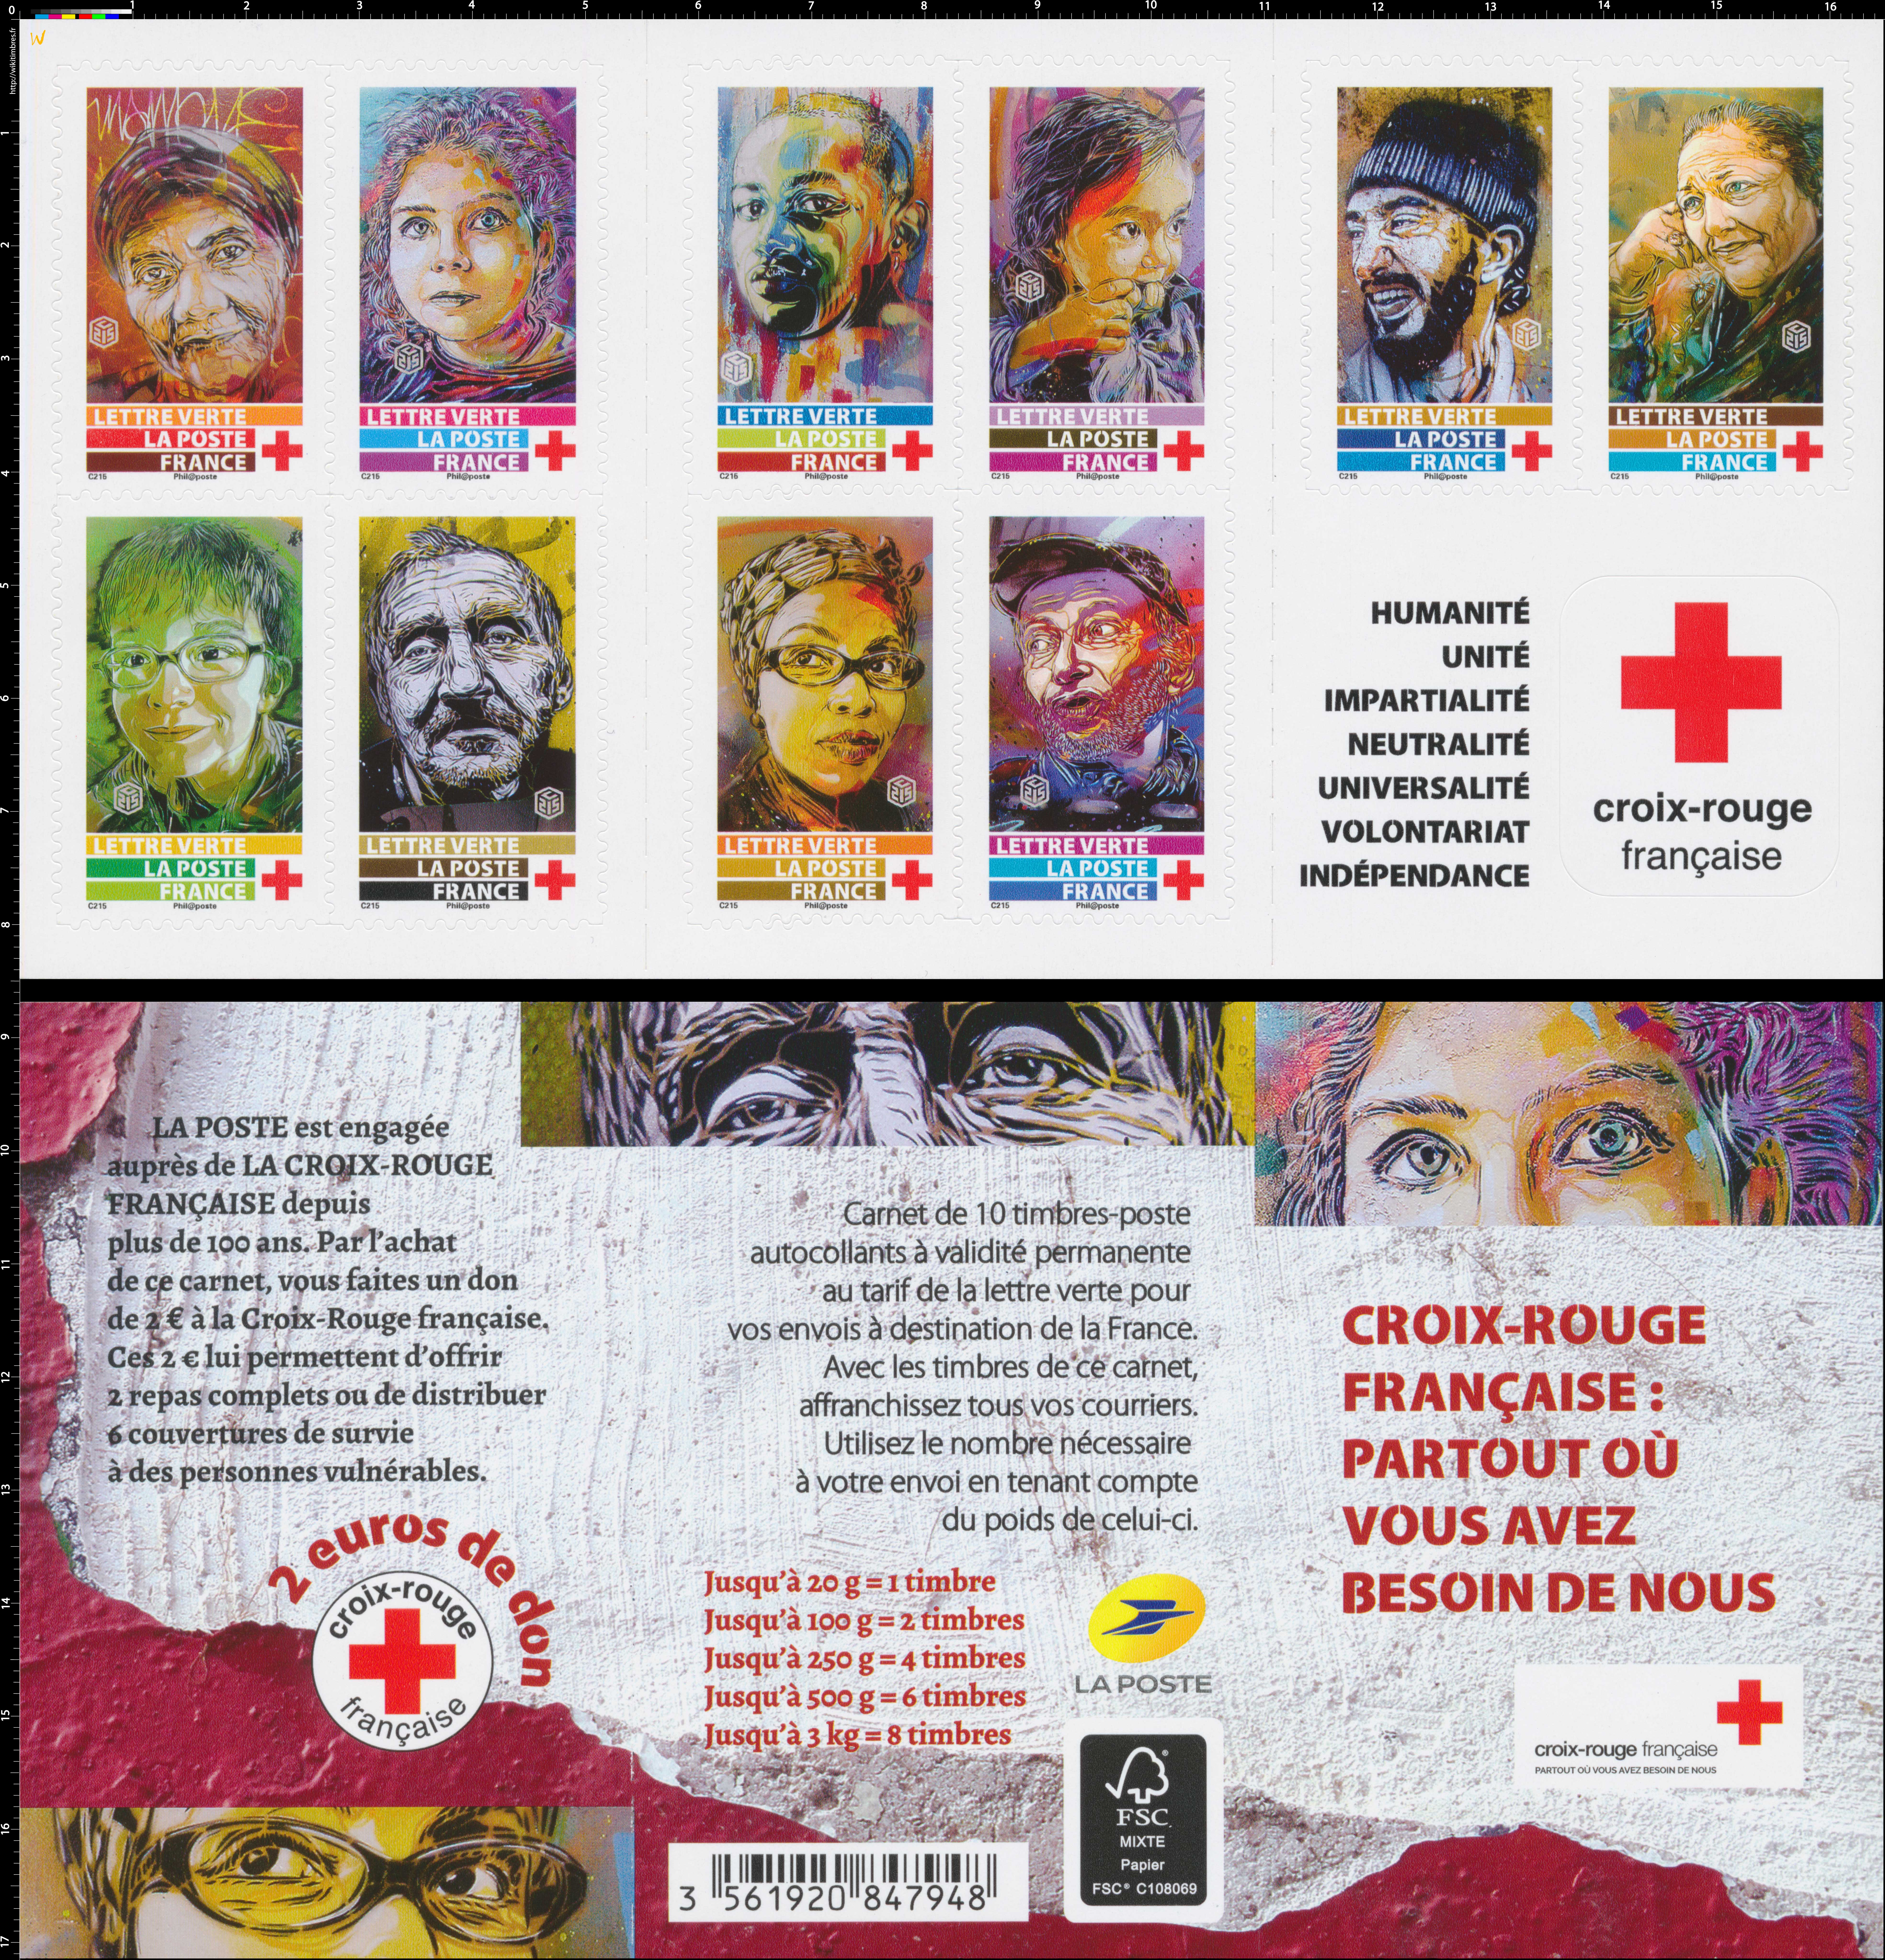 2019 Croix-Rouge française : partout où vous avez besoin de nous